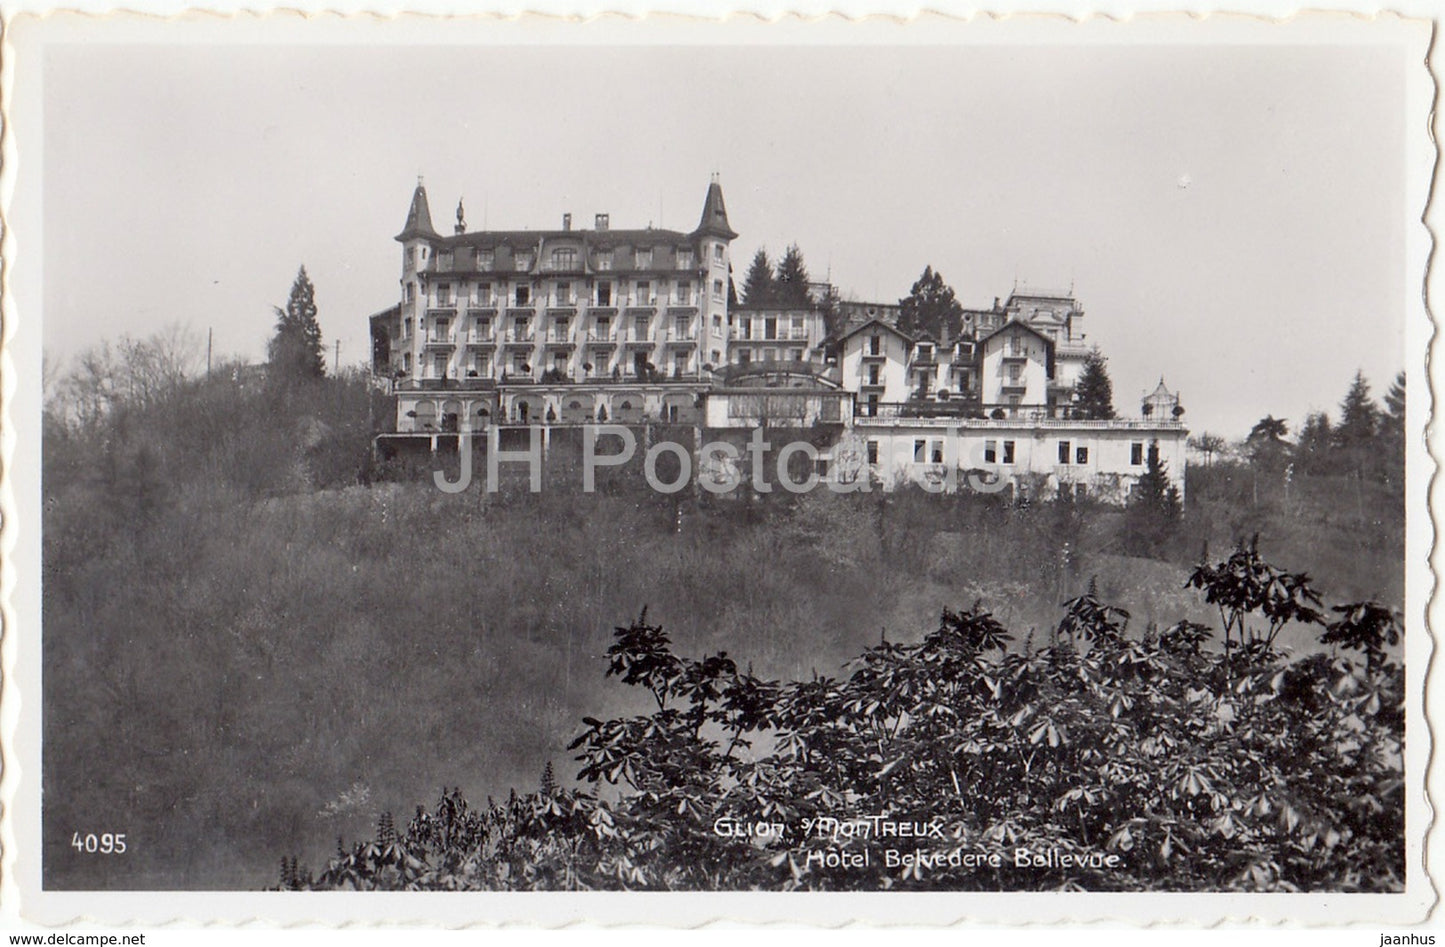 Glion - Montreux - hotel Belvedere Bellevue - 4095 - Switzerland - 1958 - used - JH Postcards